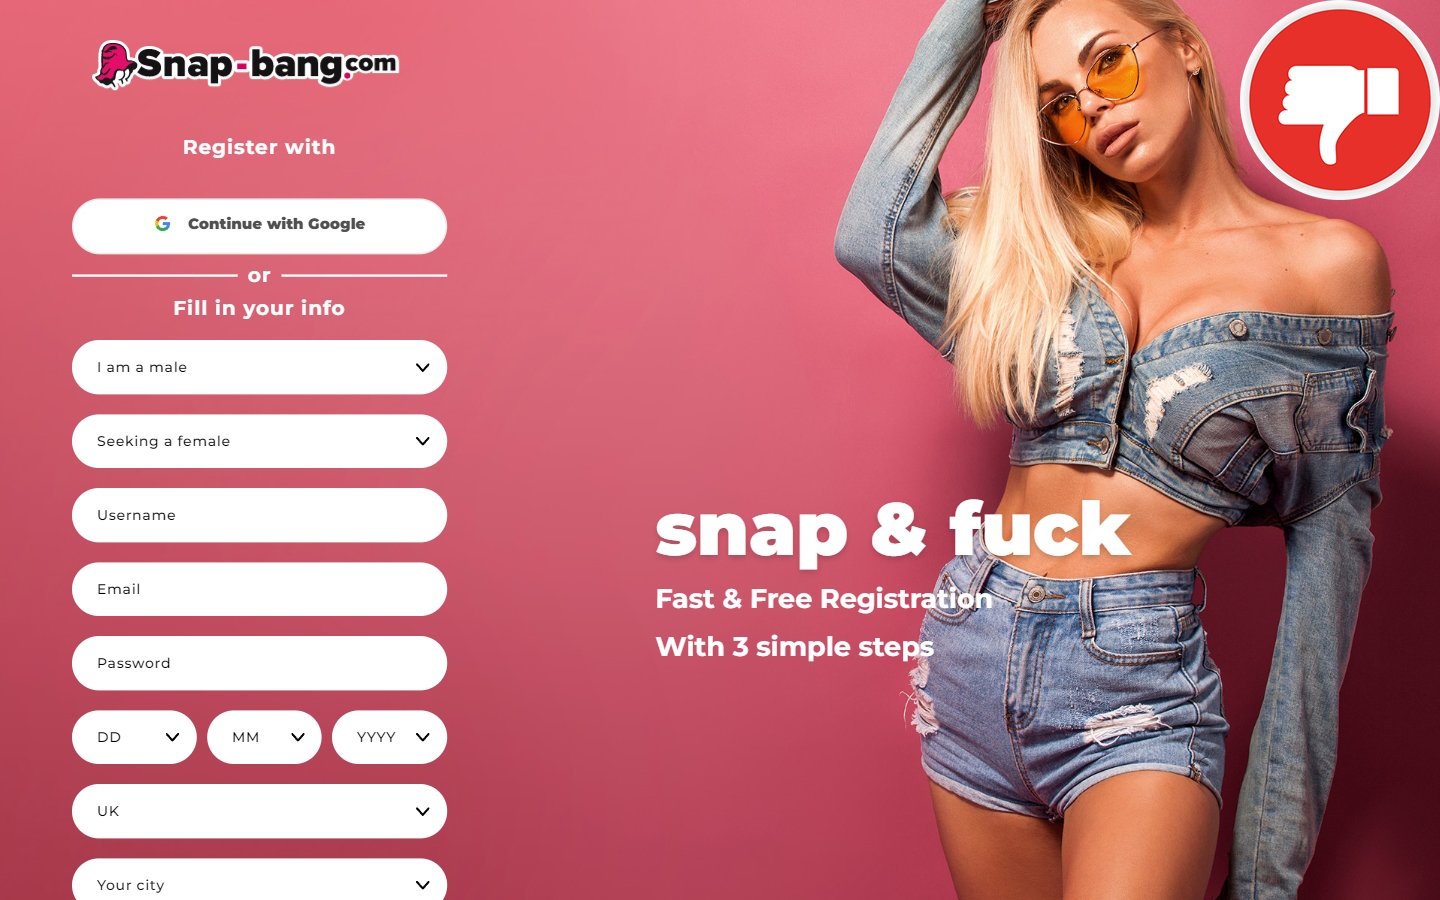 Review Snap-Bang.com Scam